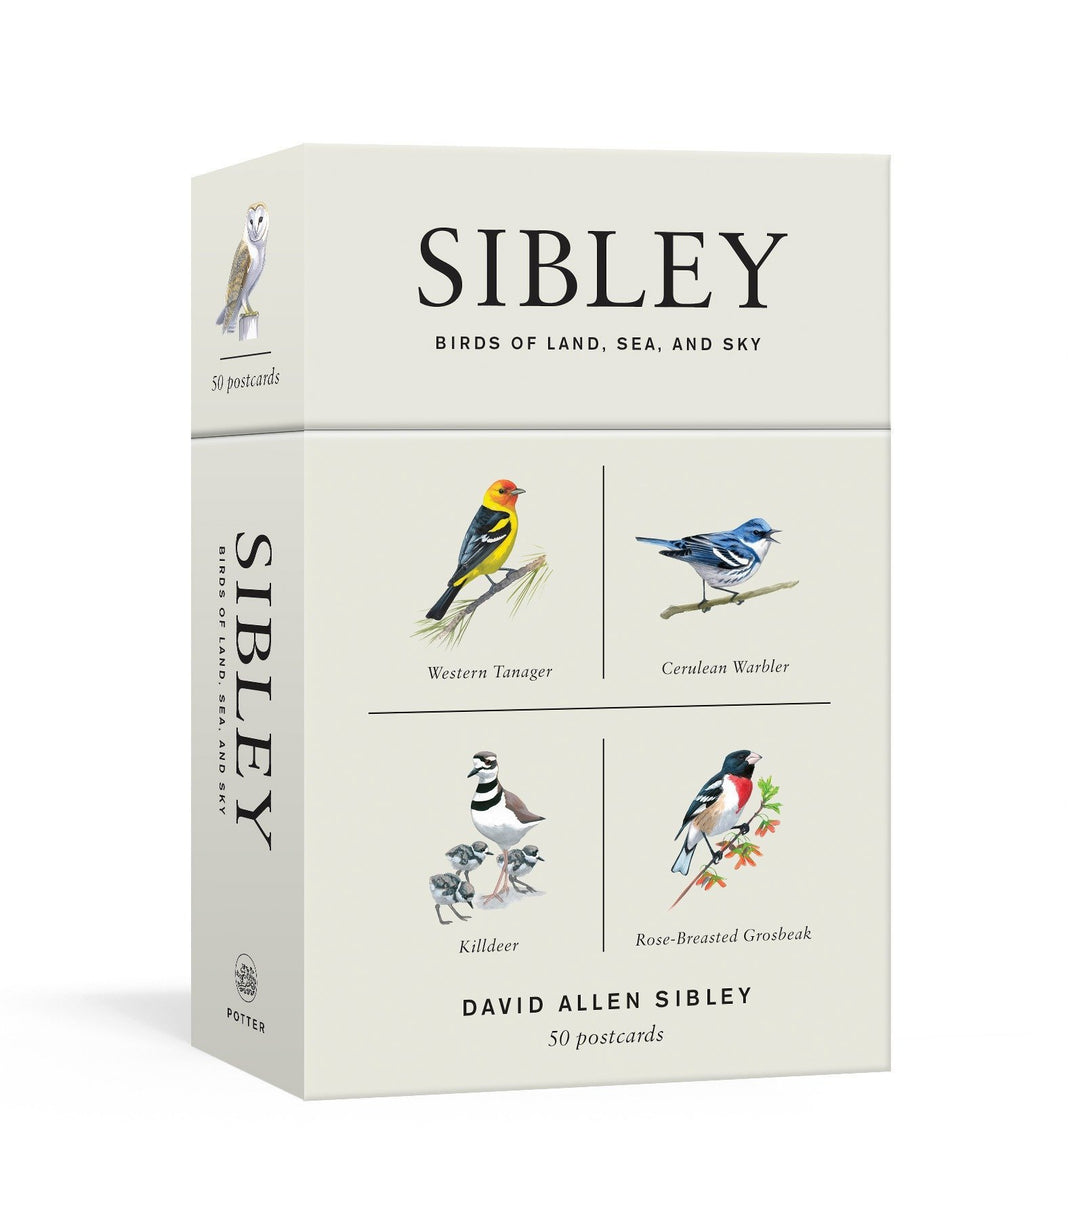 Sibley Birds of Land, Sea, and Sky: 50 Postcards - by David Allen Sibley